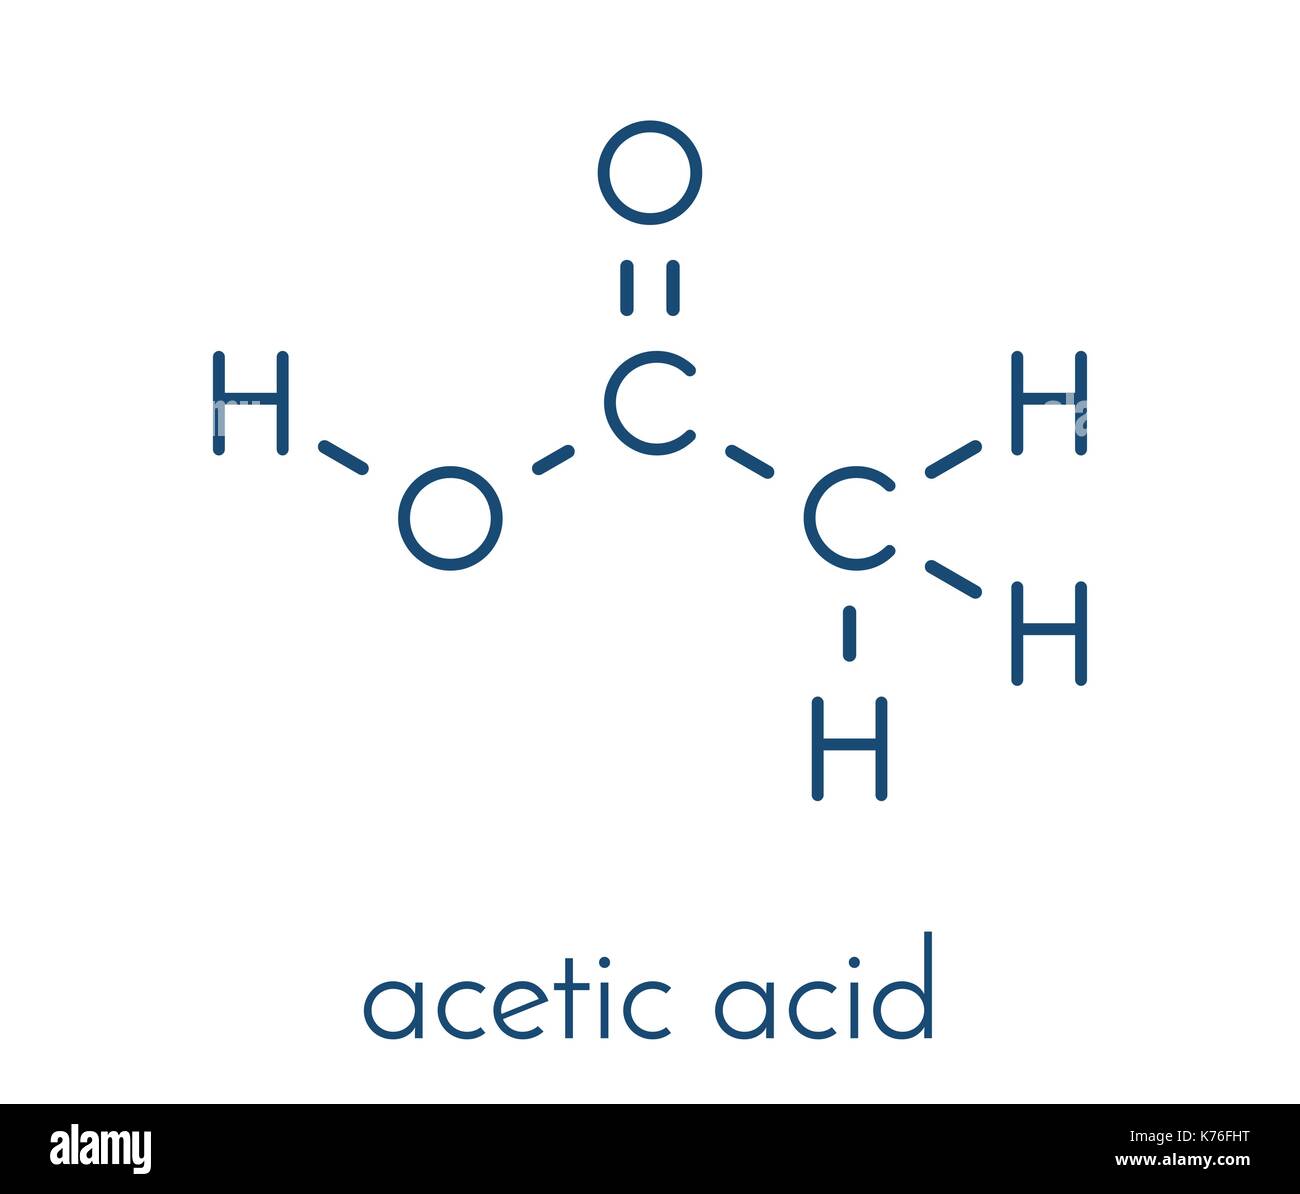 Acetic acid molecule. Vinegar is an aqueous solution of acetic acid ...